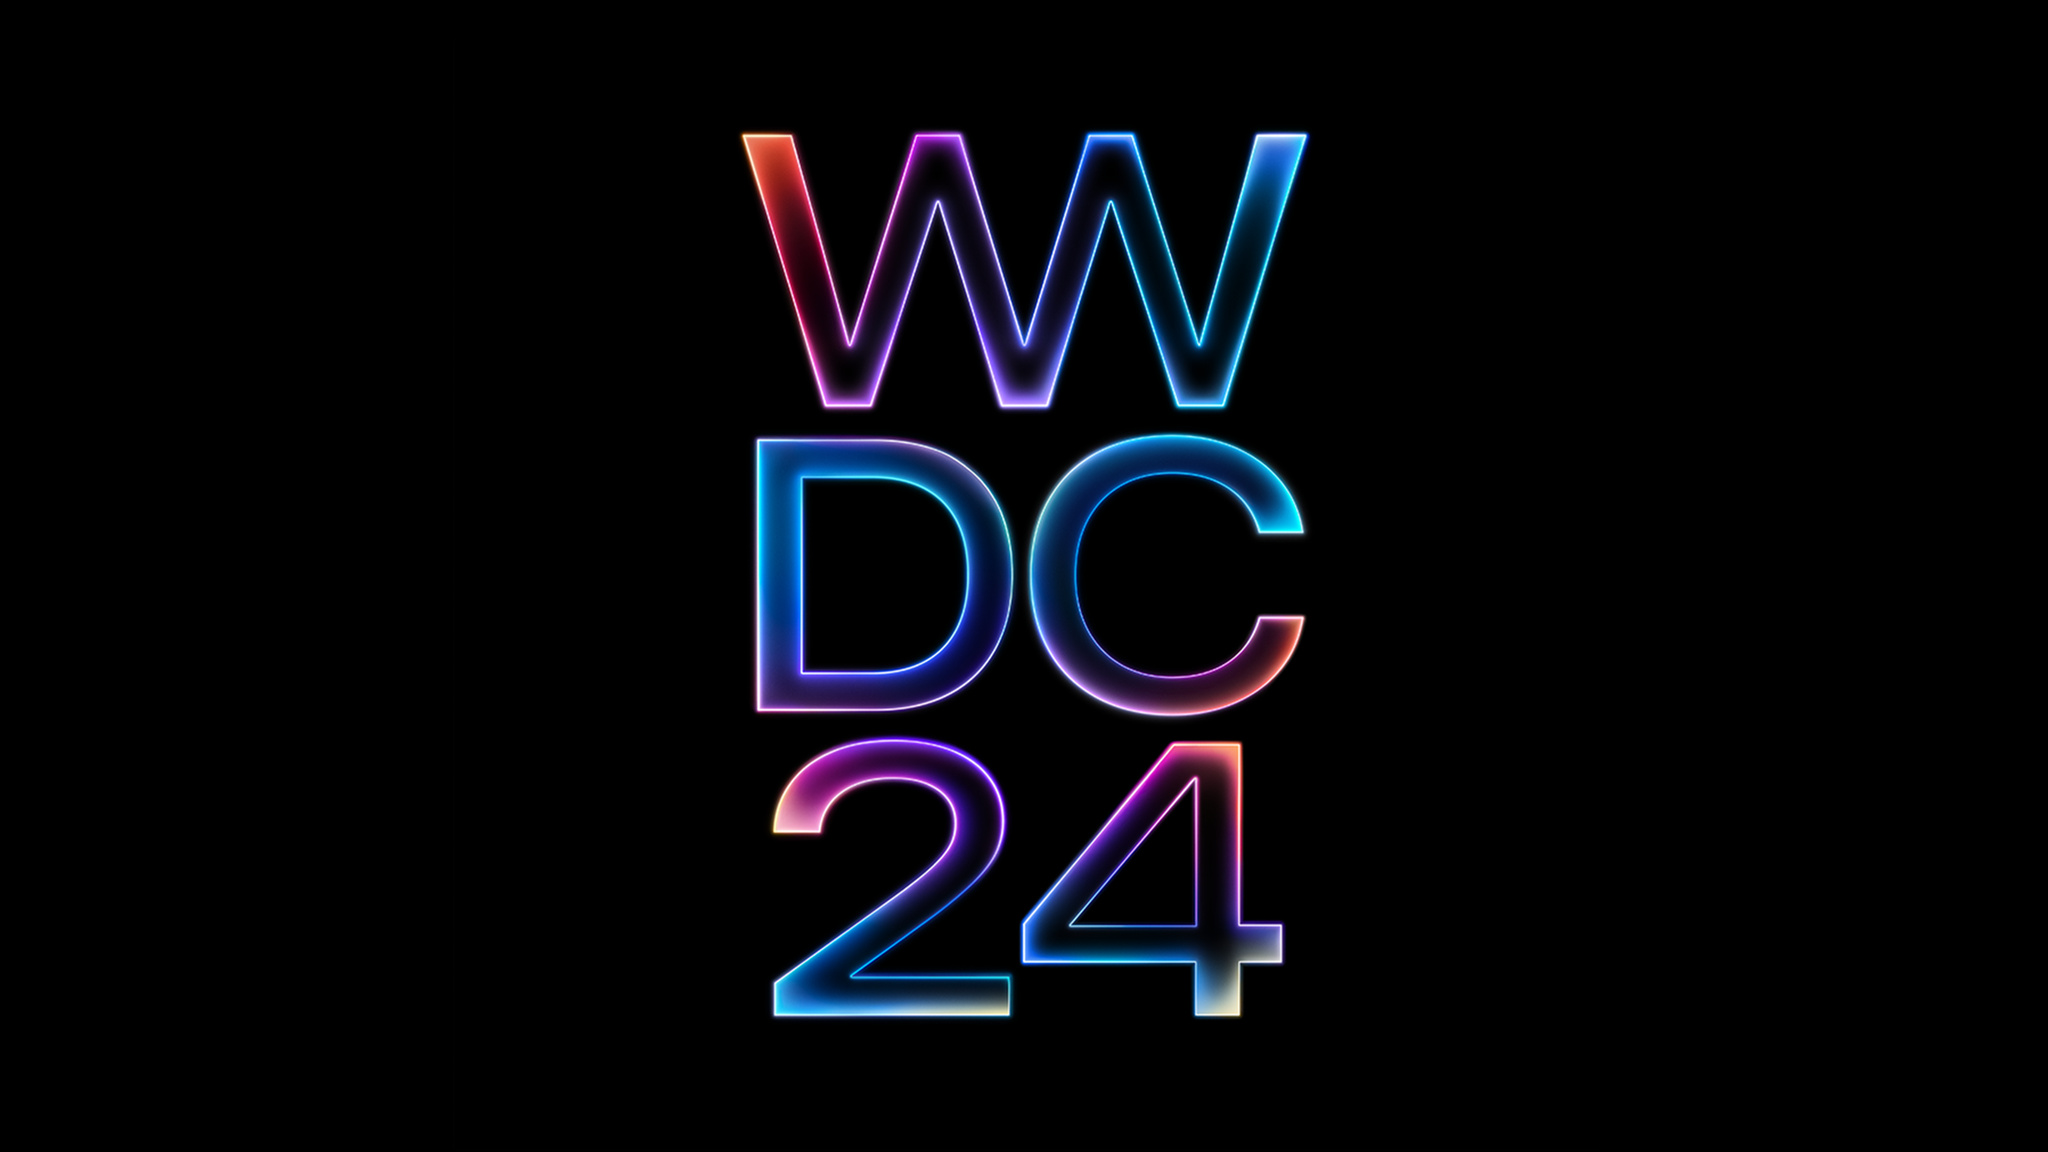 “WWDC24”一词以红色、紫色和蓝色的发光渐变显示在黑色背景上。